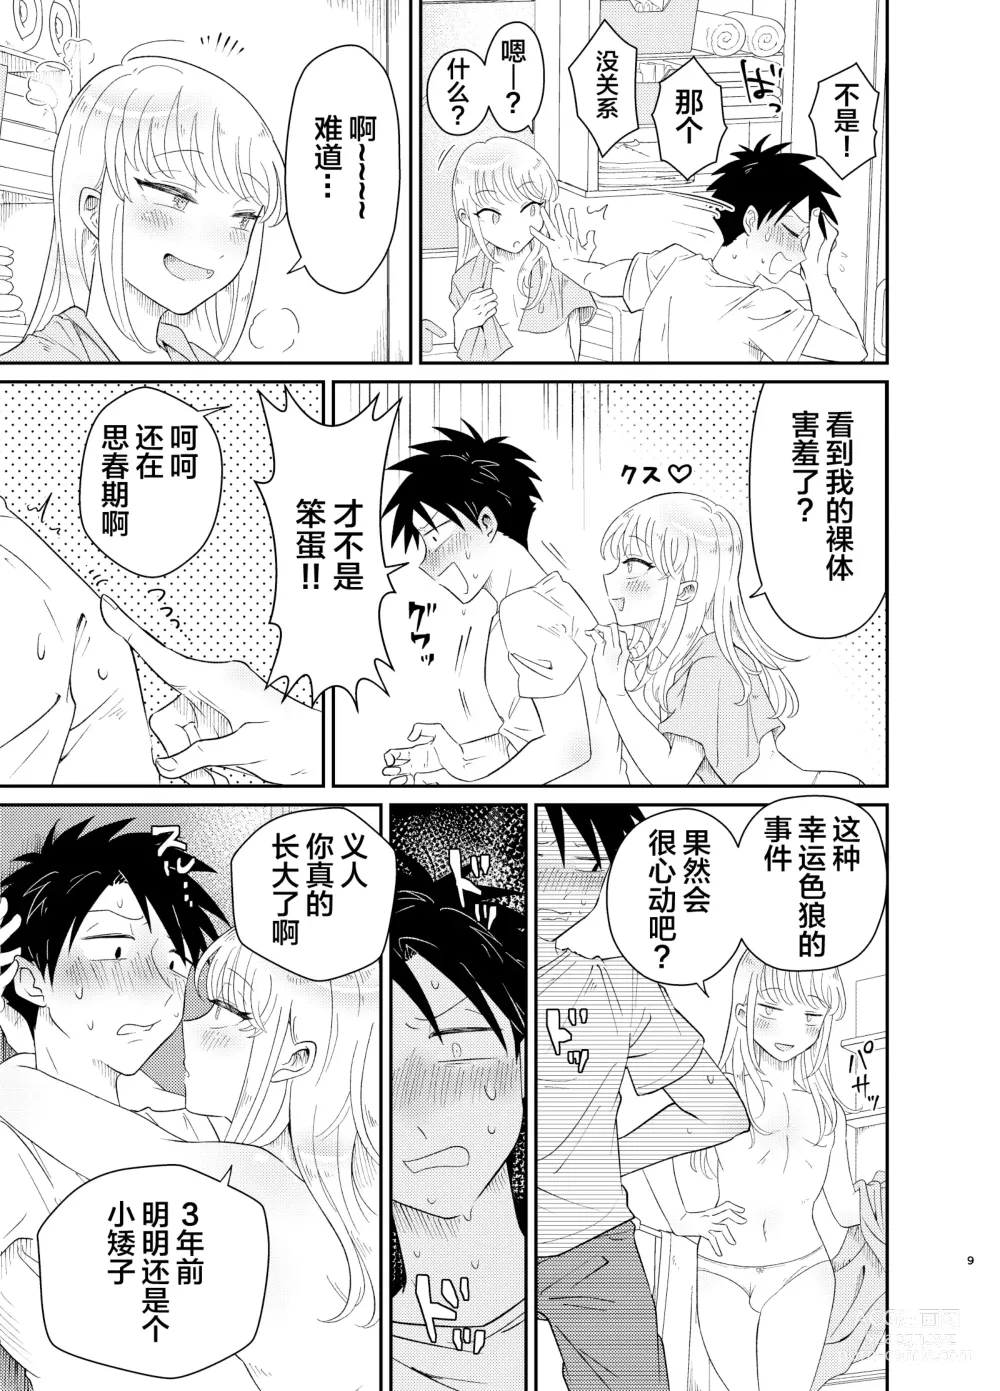 Page 9 of doujinshi Mechakucha Kawaikute Ecchi na Itoko wa Suki desu ka?